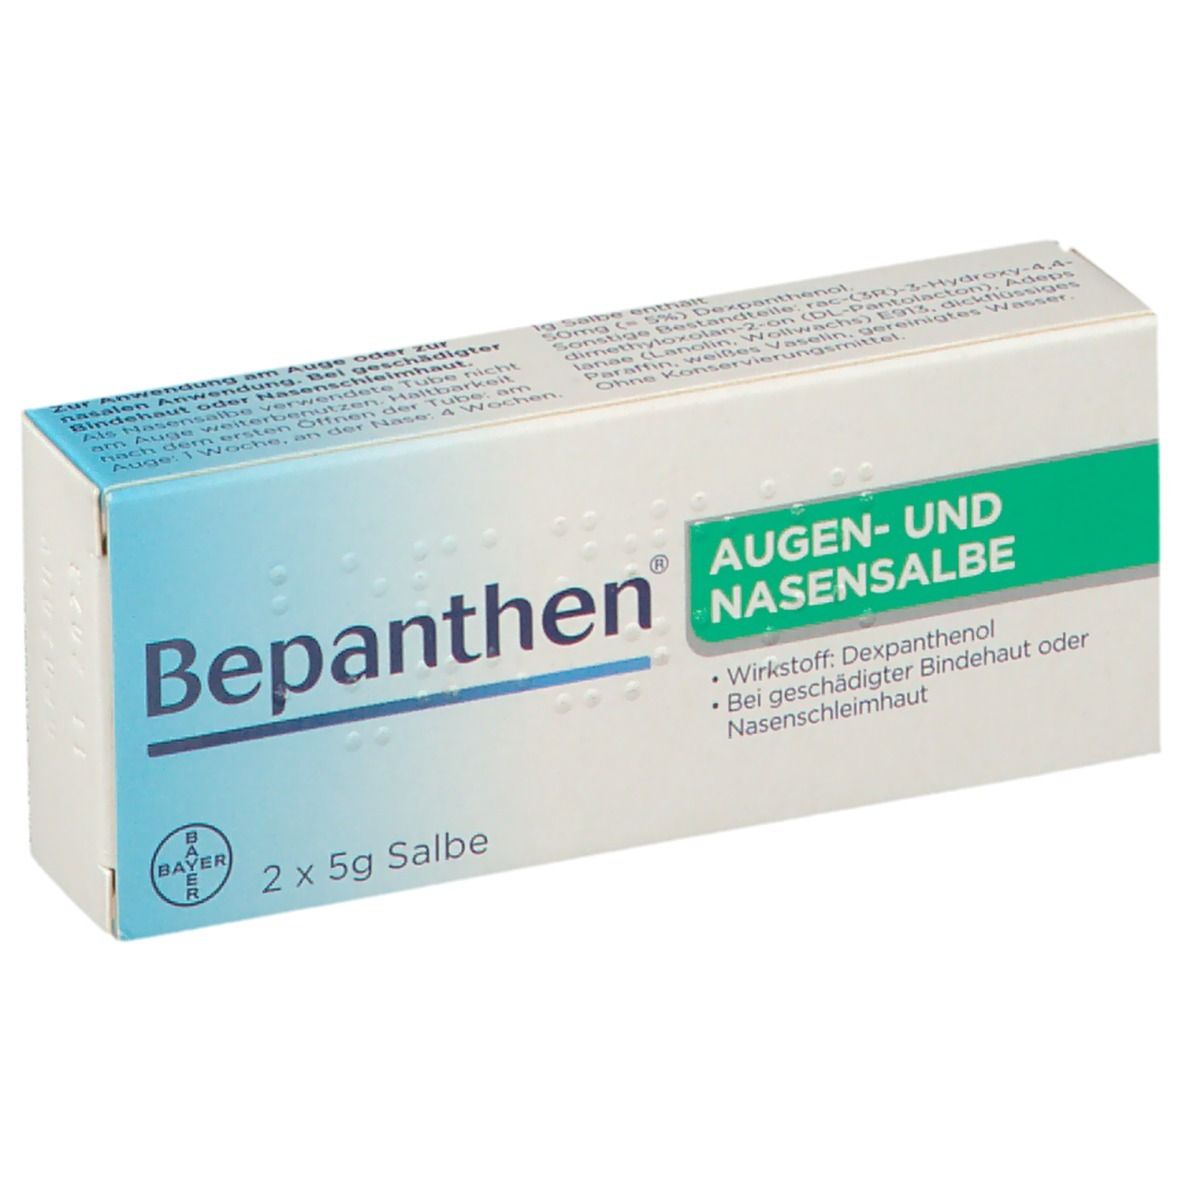 Bepanthen® AUGEN- UND NASENSALBE